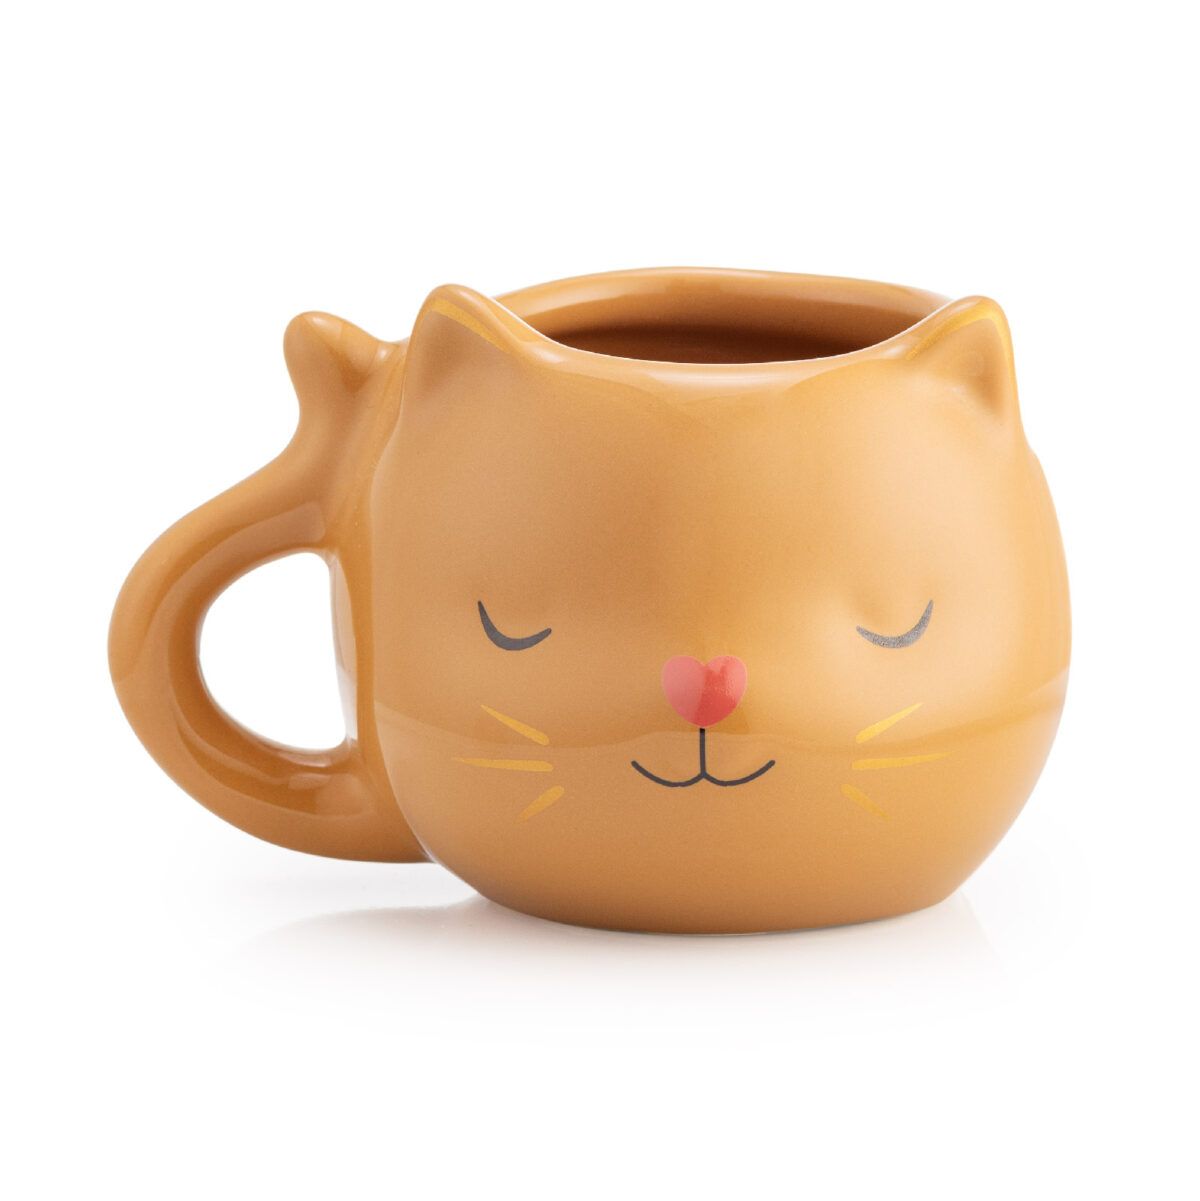 Caneca 3D gato fofinho caramelo gatinho bege doce de leite